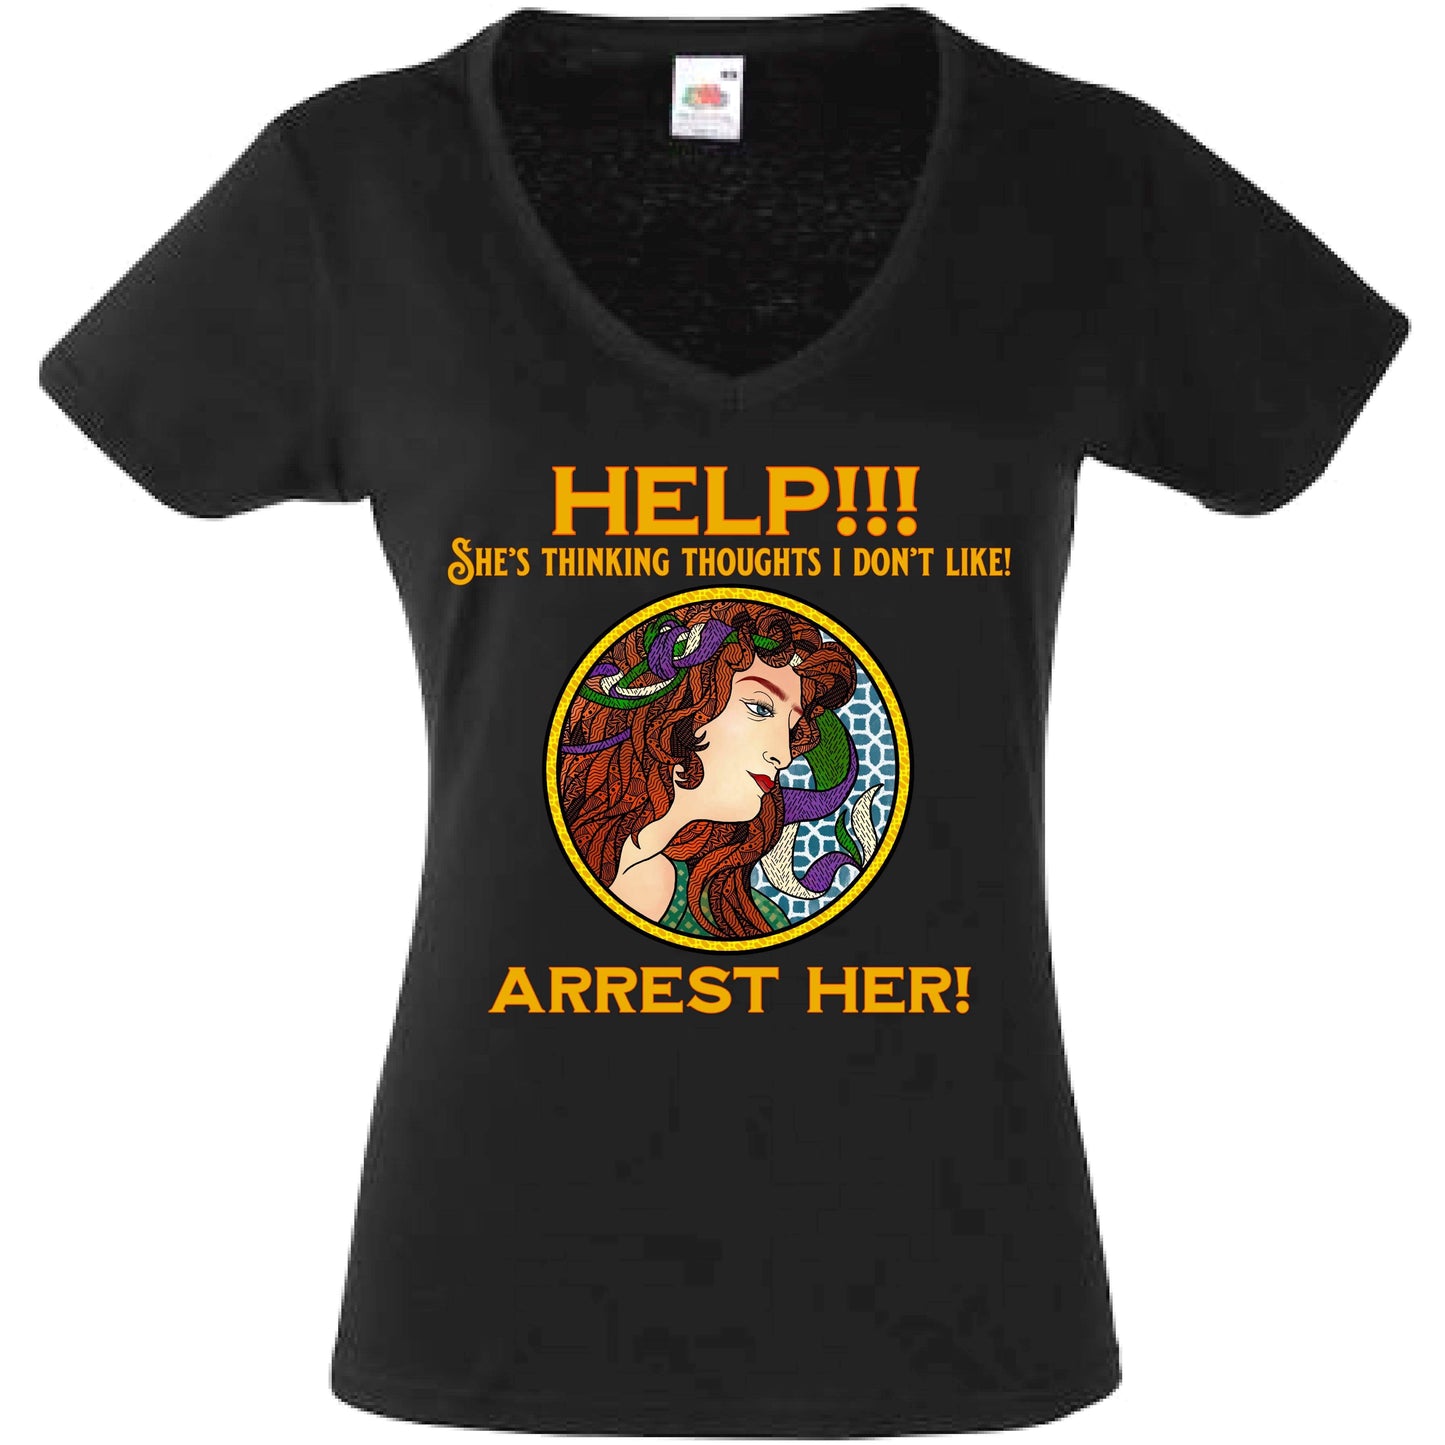 Arrest Her! V-Neck Tee